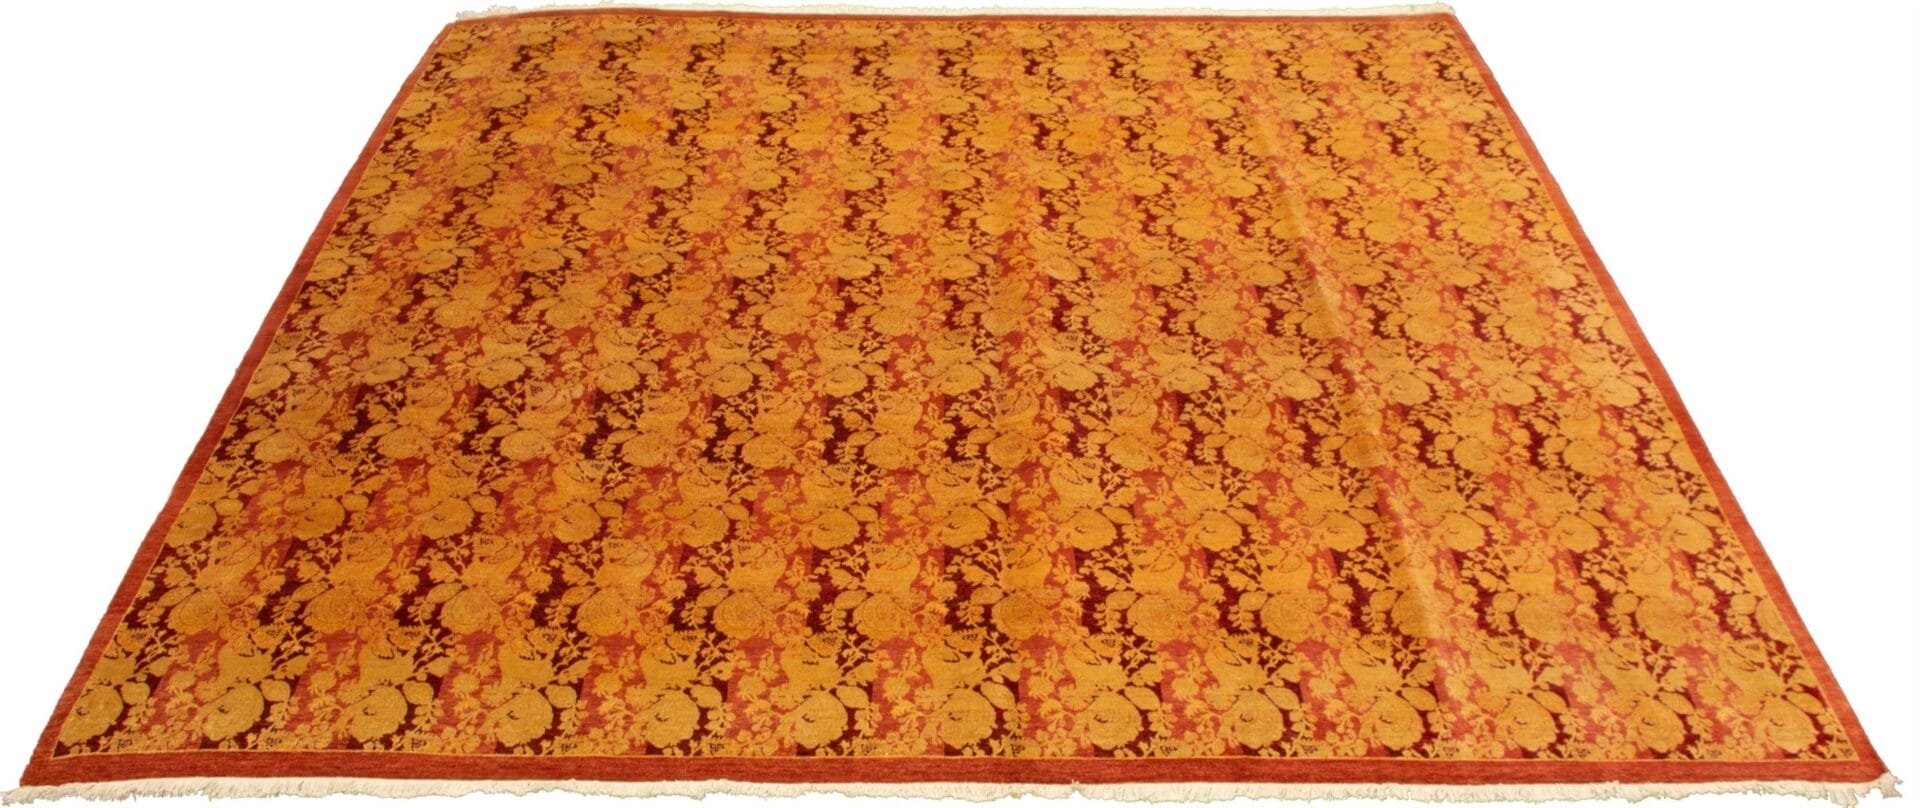 Een oranje en geel tapijt op een witte achtergrond.